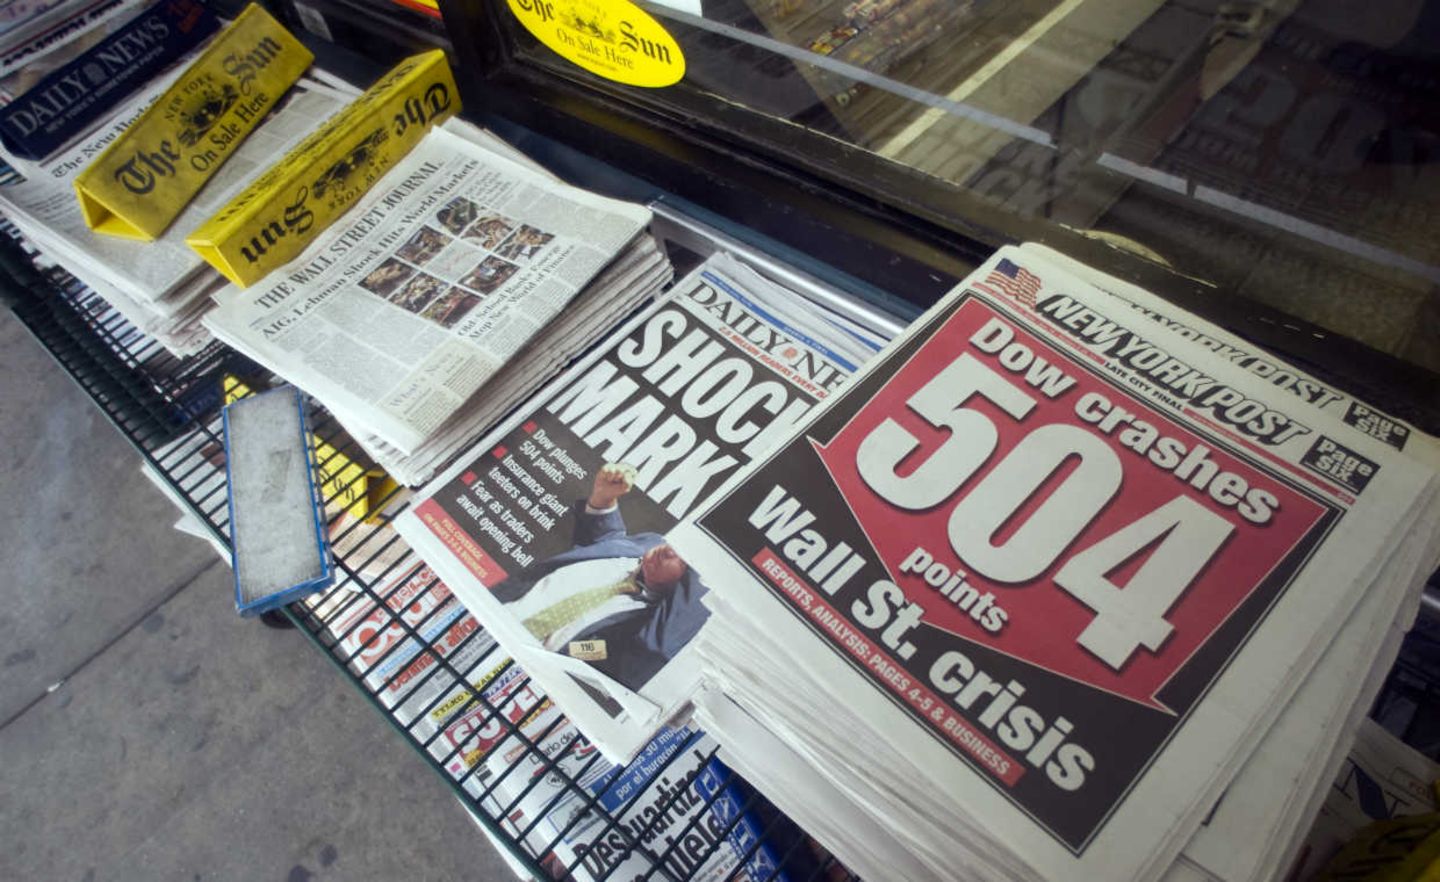 Nach der Lehman-Pleite brachen die Börsen ein - und die Zeitungen hatten ihre Schlagzeile